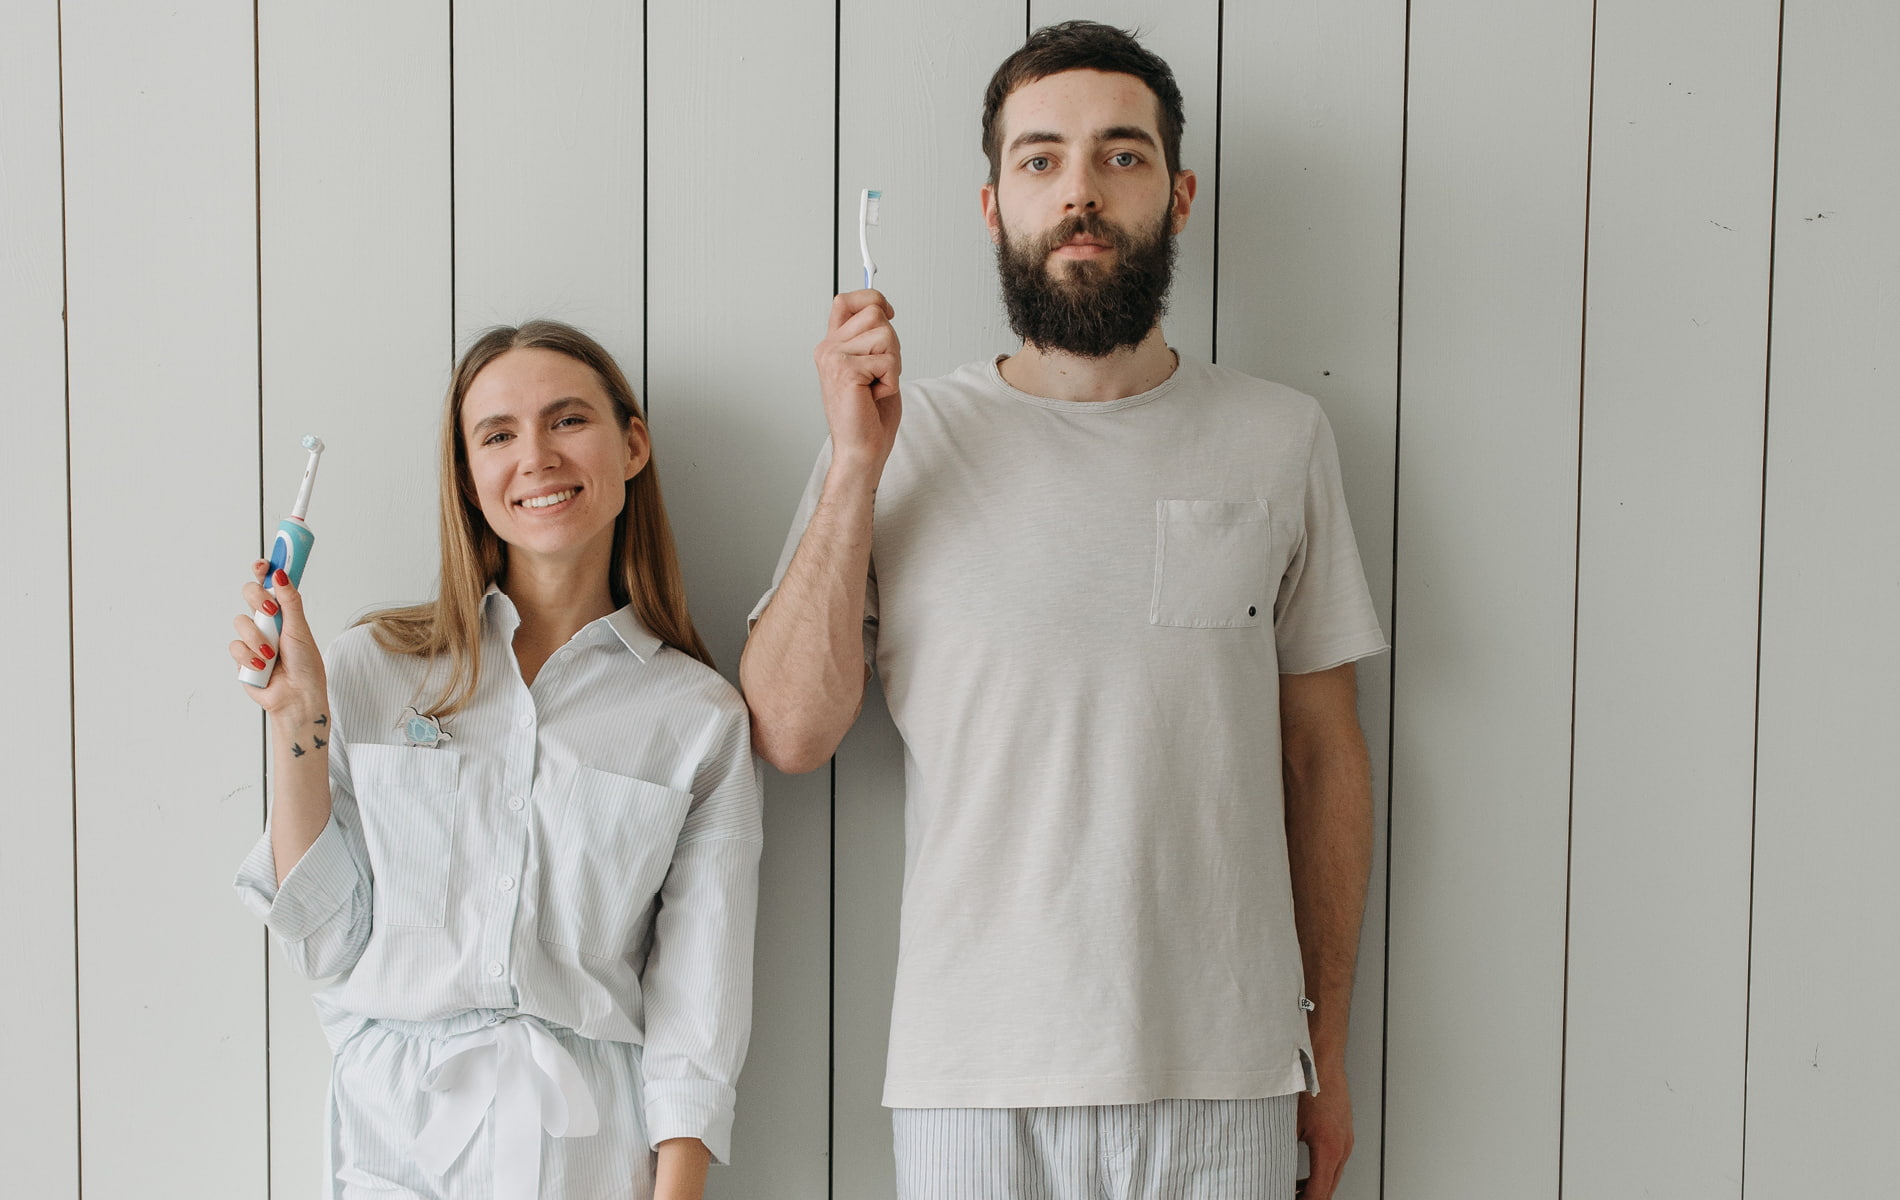 Mann und Frau im Schlafanzug und Zahnbürste in der Hand